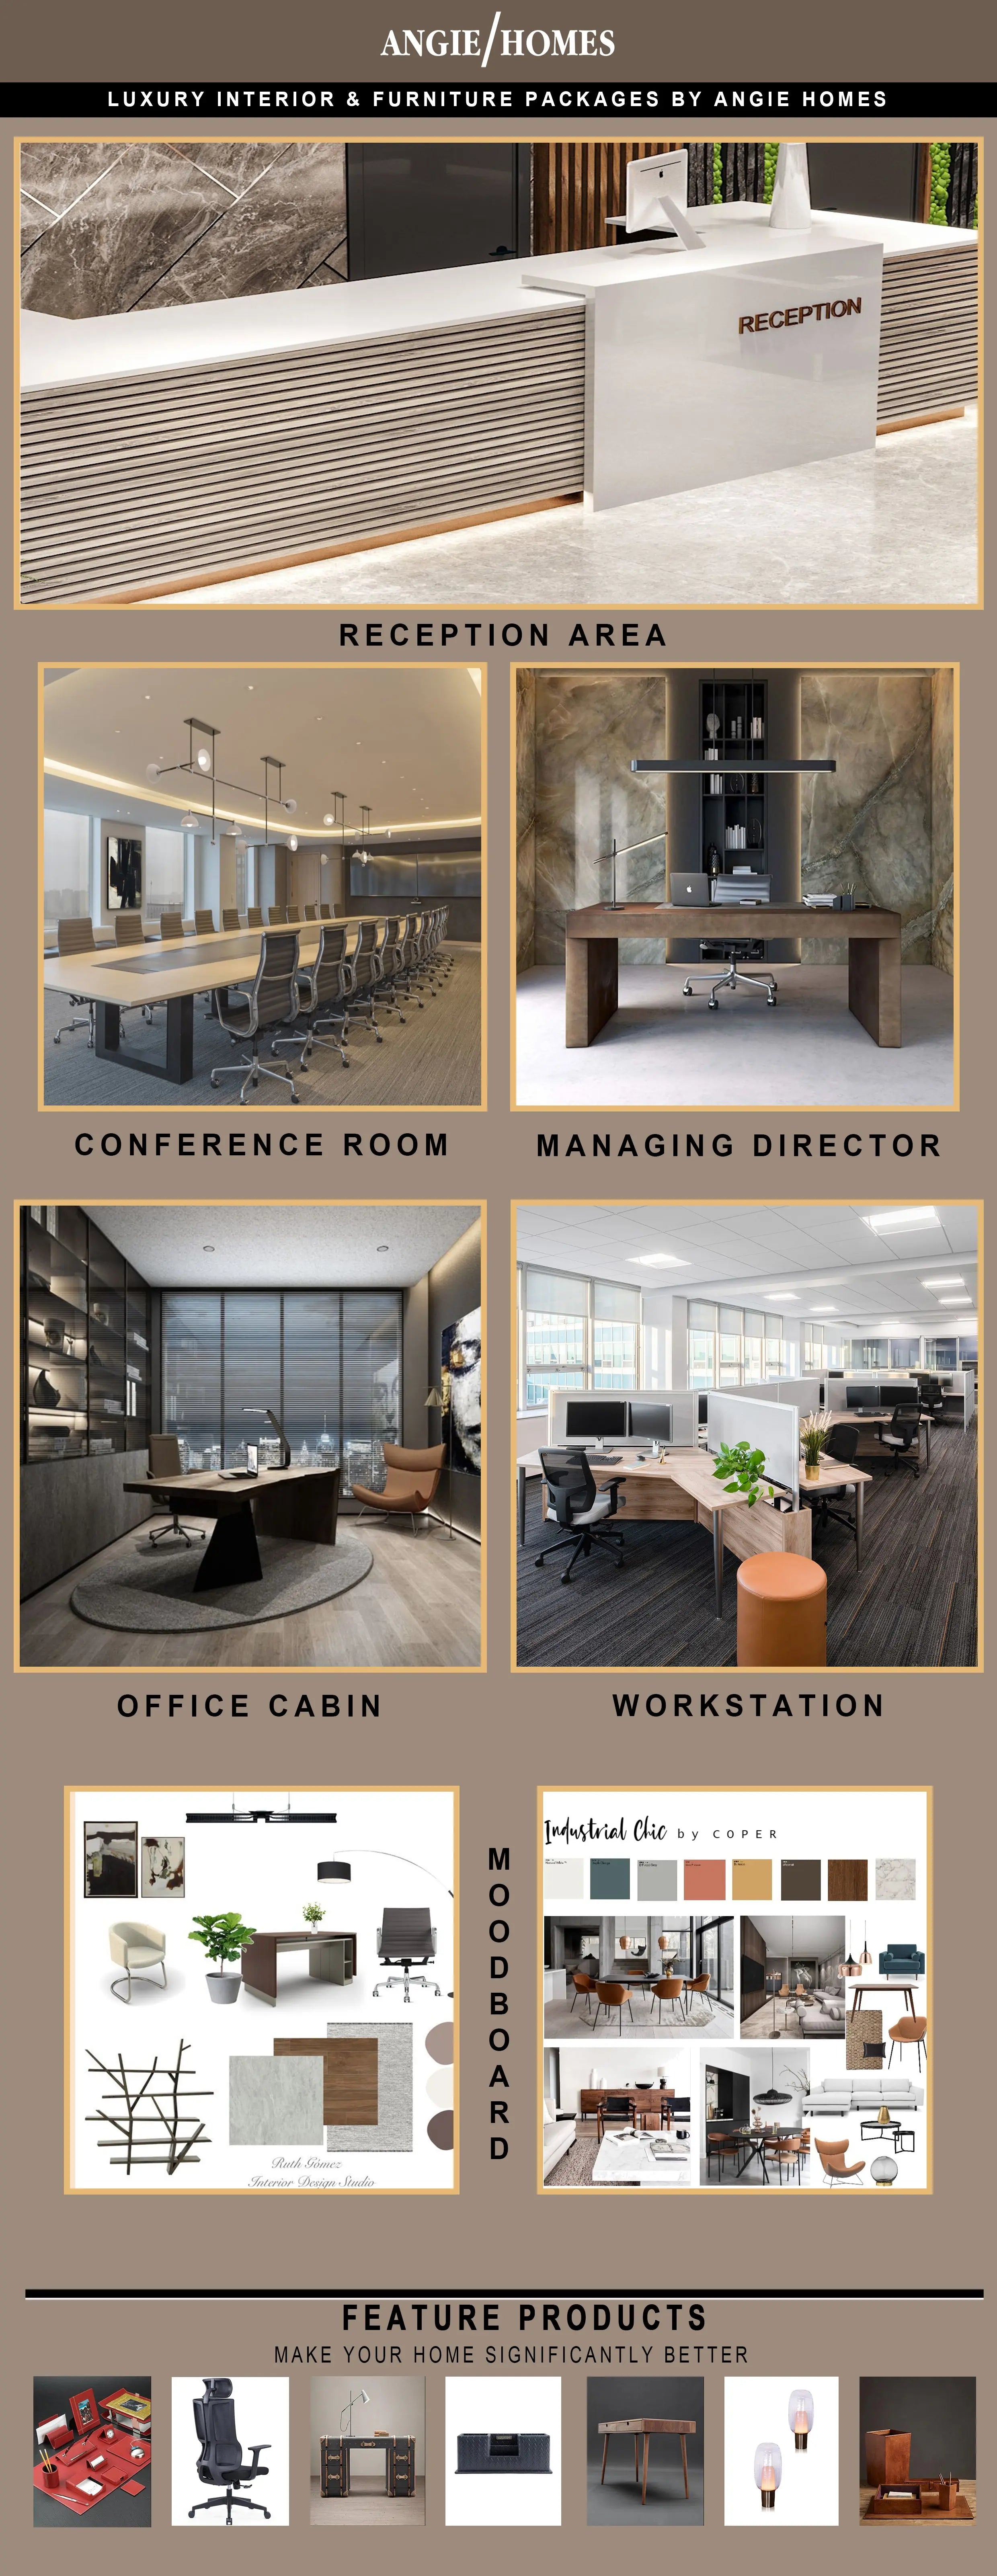 Burham Luxurious Office Interior Design